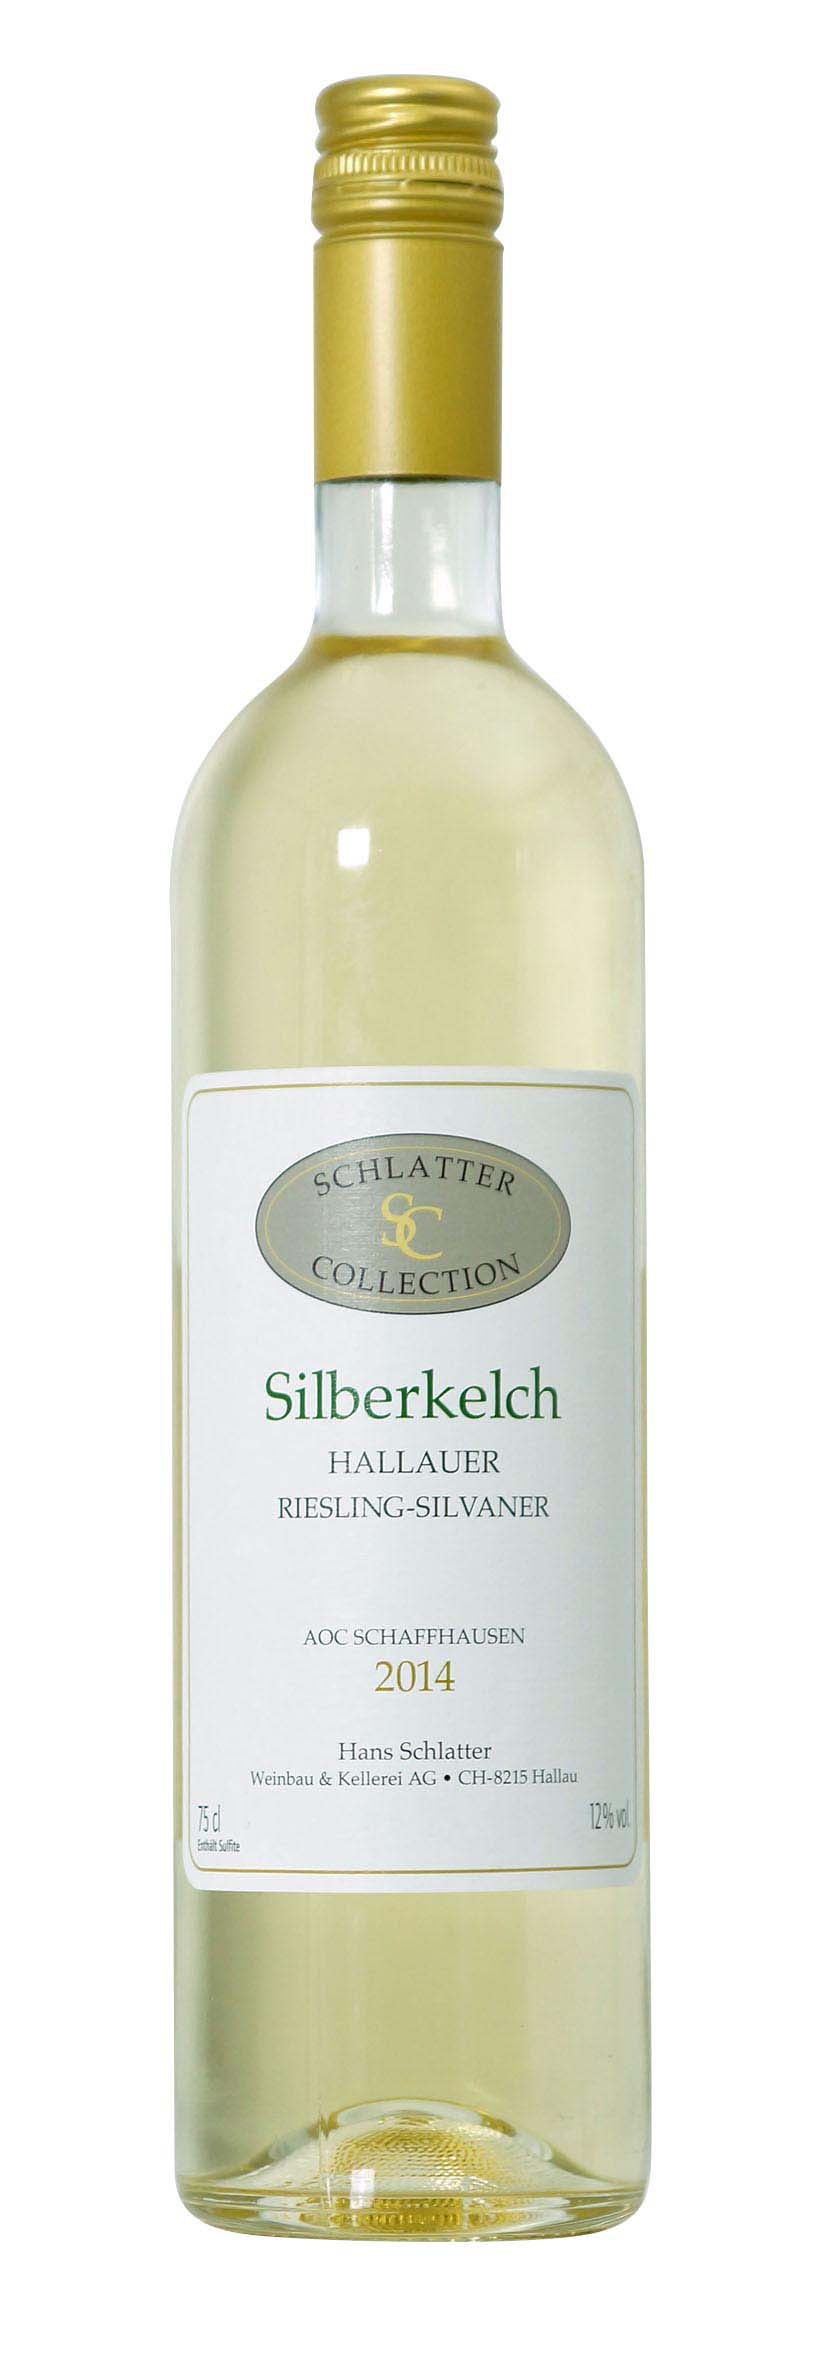 Silberkelch Hallauer Riesling-Silvaner 2014